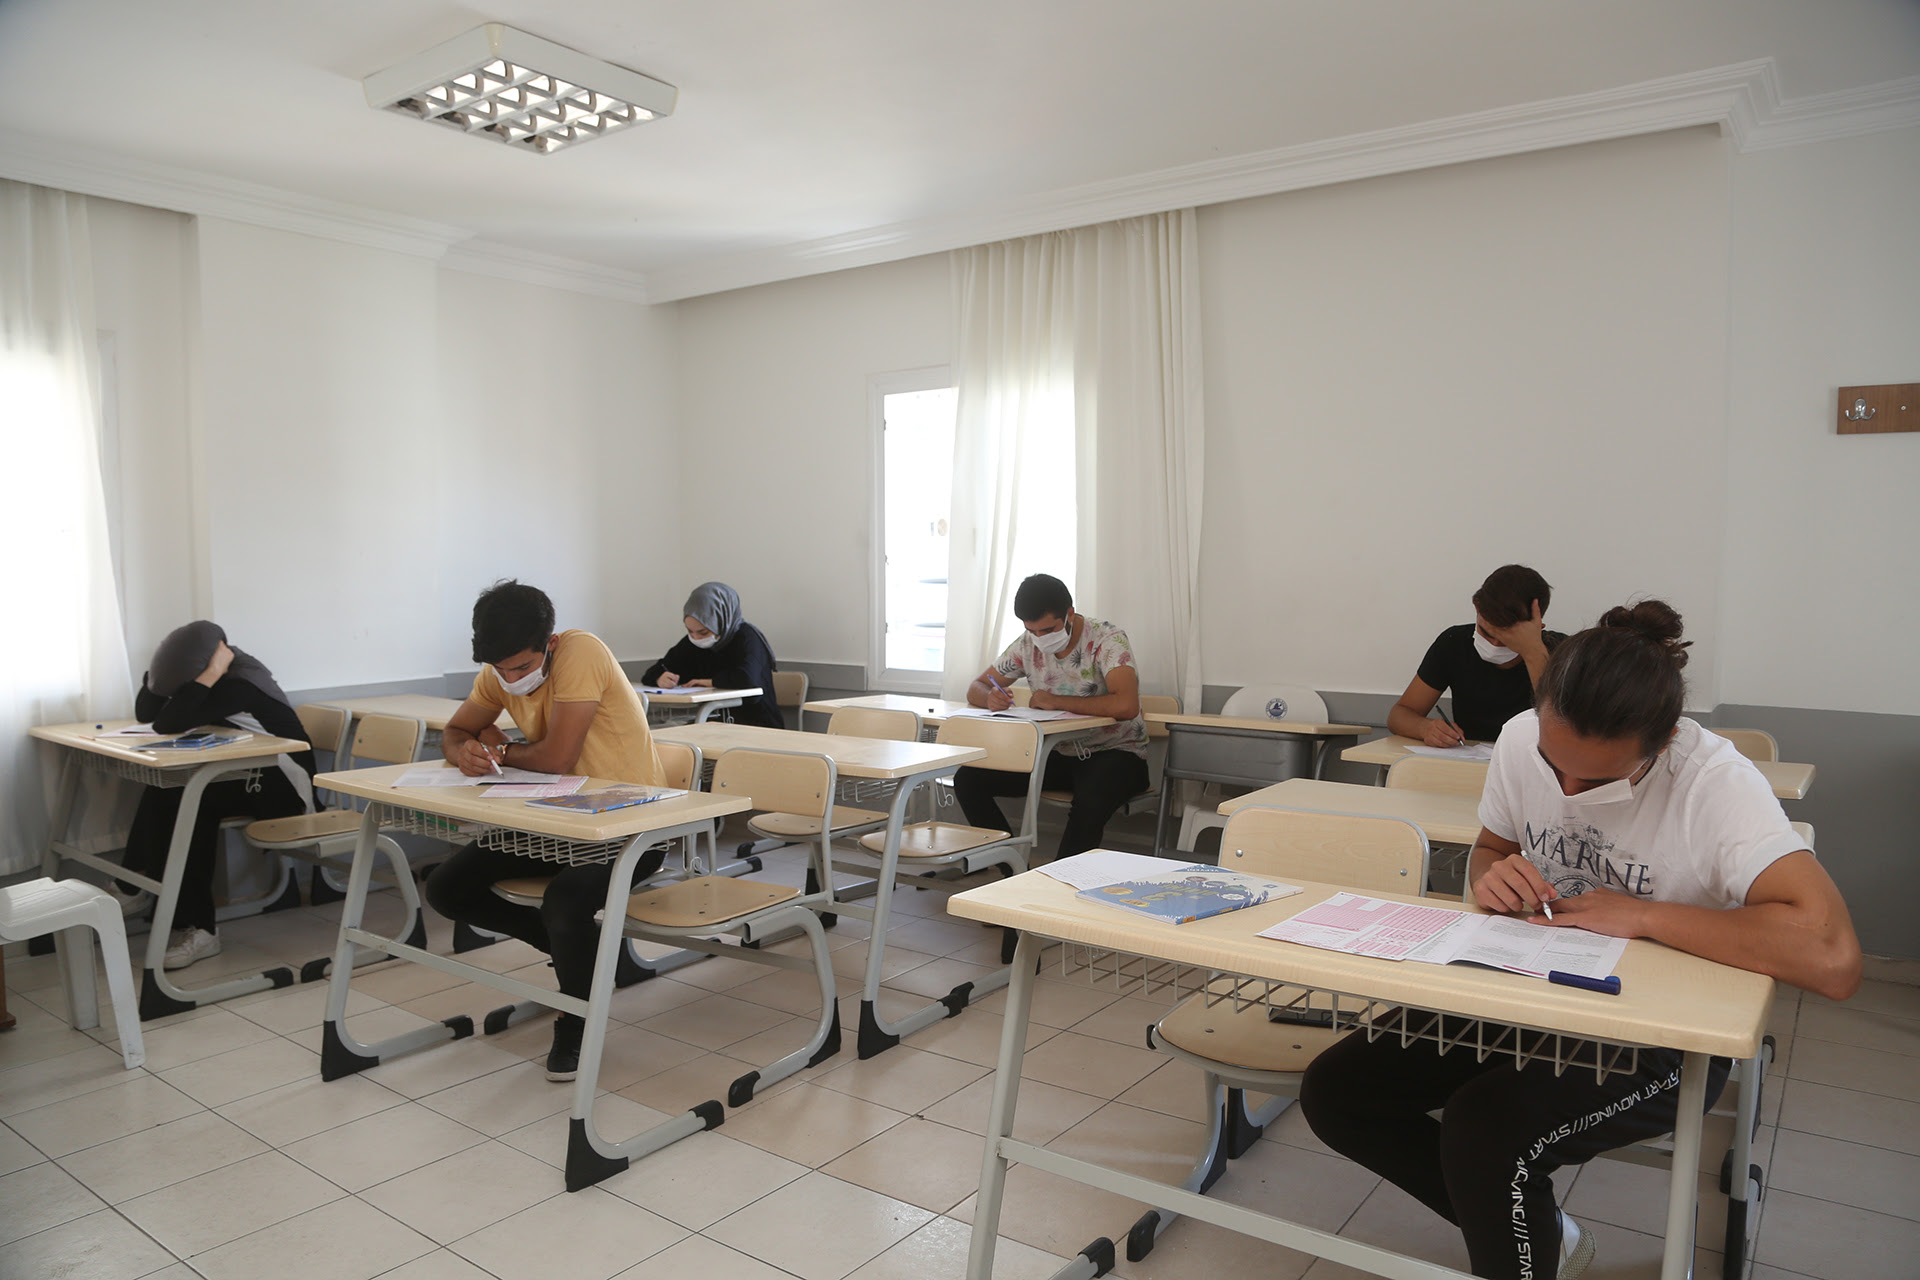 Erdemli Belediyesi Kurs Merkezlerinden Kontrollü Sınav